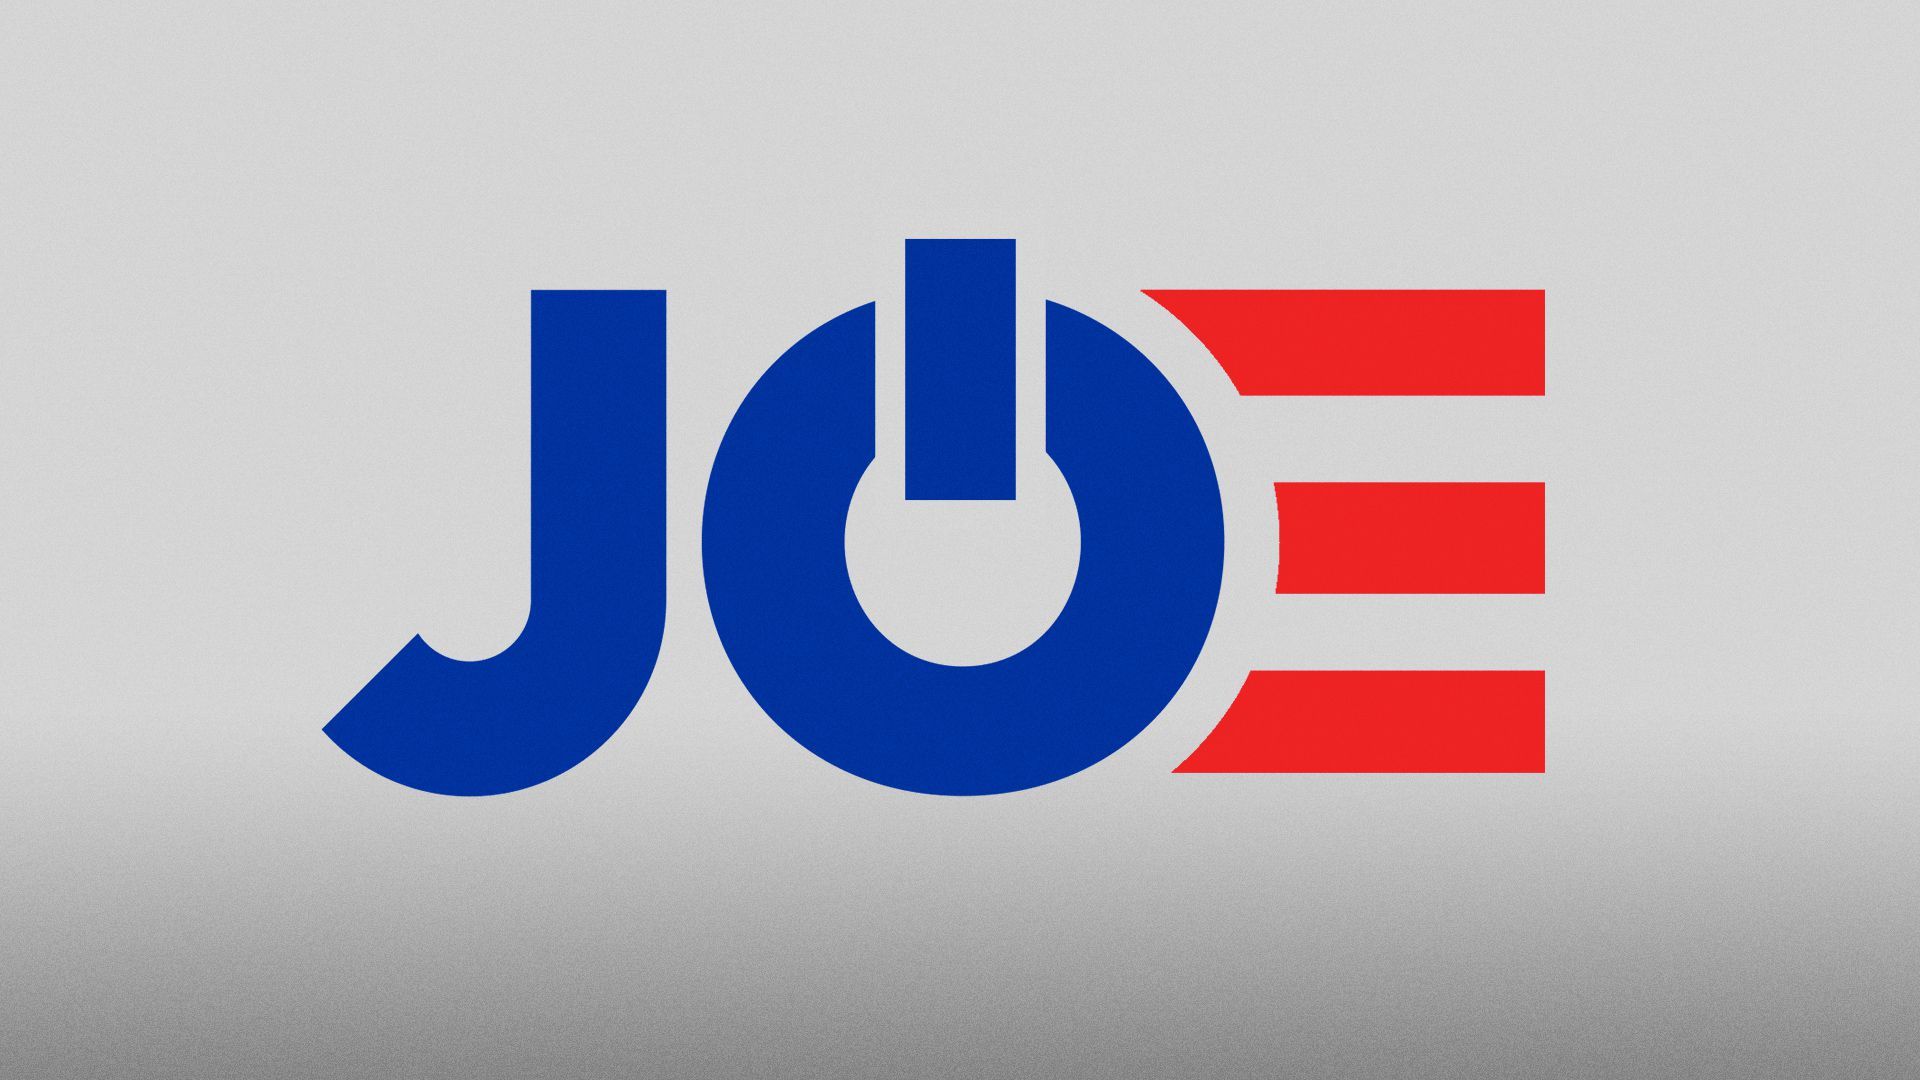 Illustration of the "JOE" Joe Biden logo with the 'O' as a reset button. 